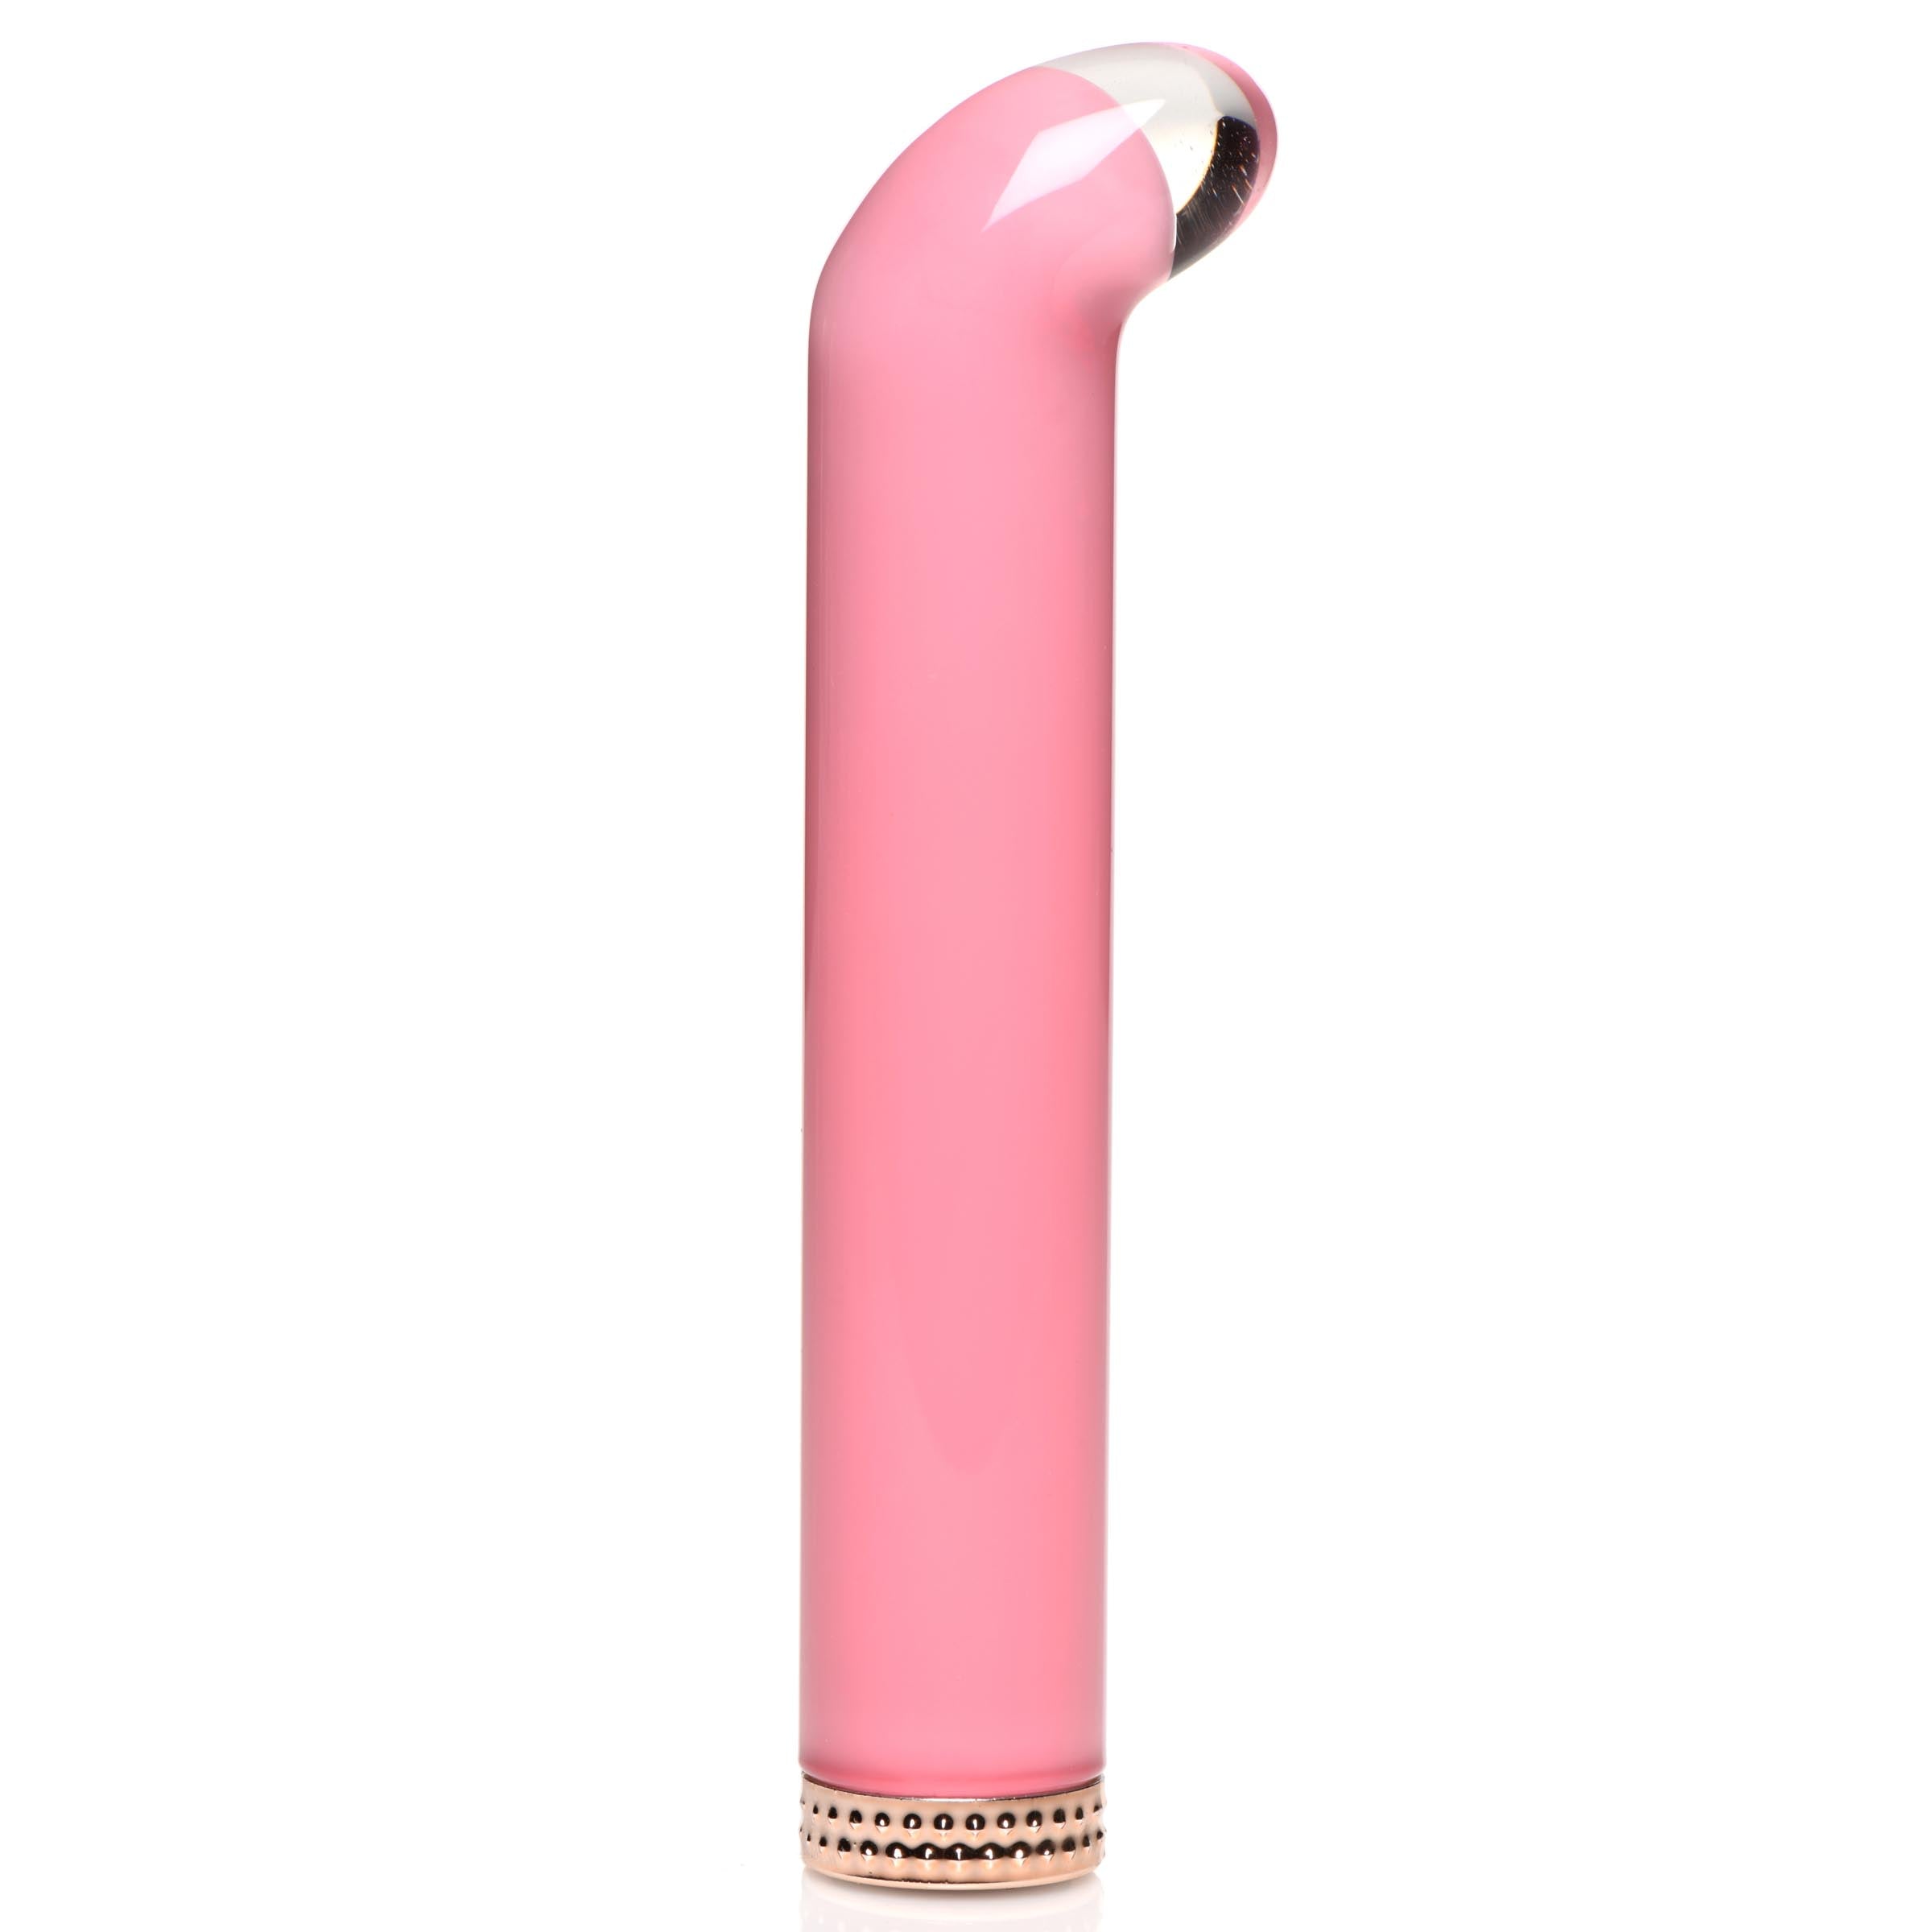 Vibra-Glass 10X Mini G-Spot Vibe Pink